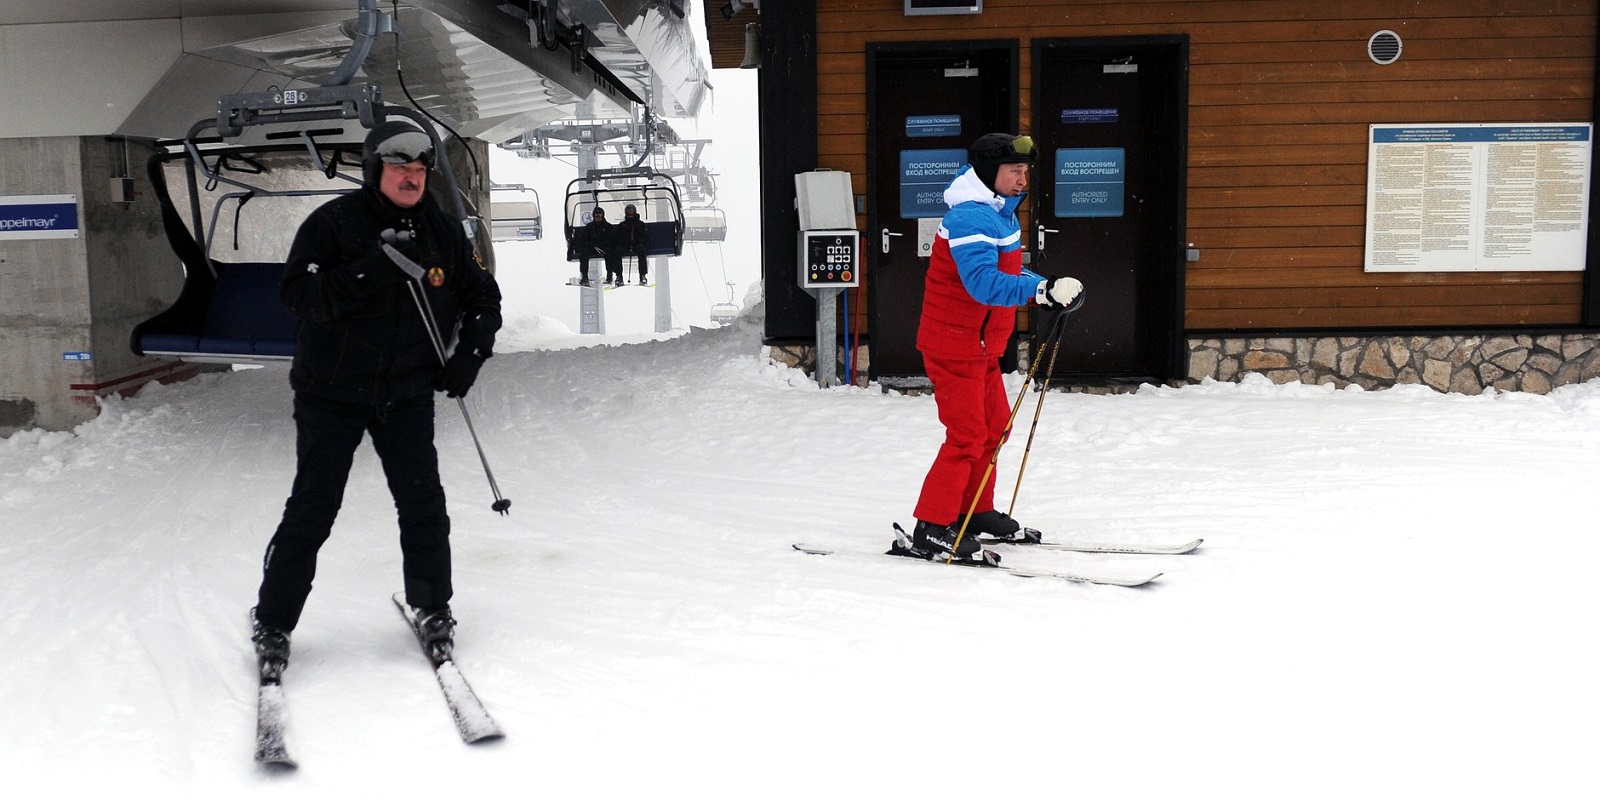 Путин и Лукашенко покатались на лыжах и снегоходах (видео)